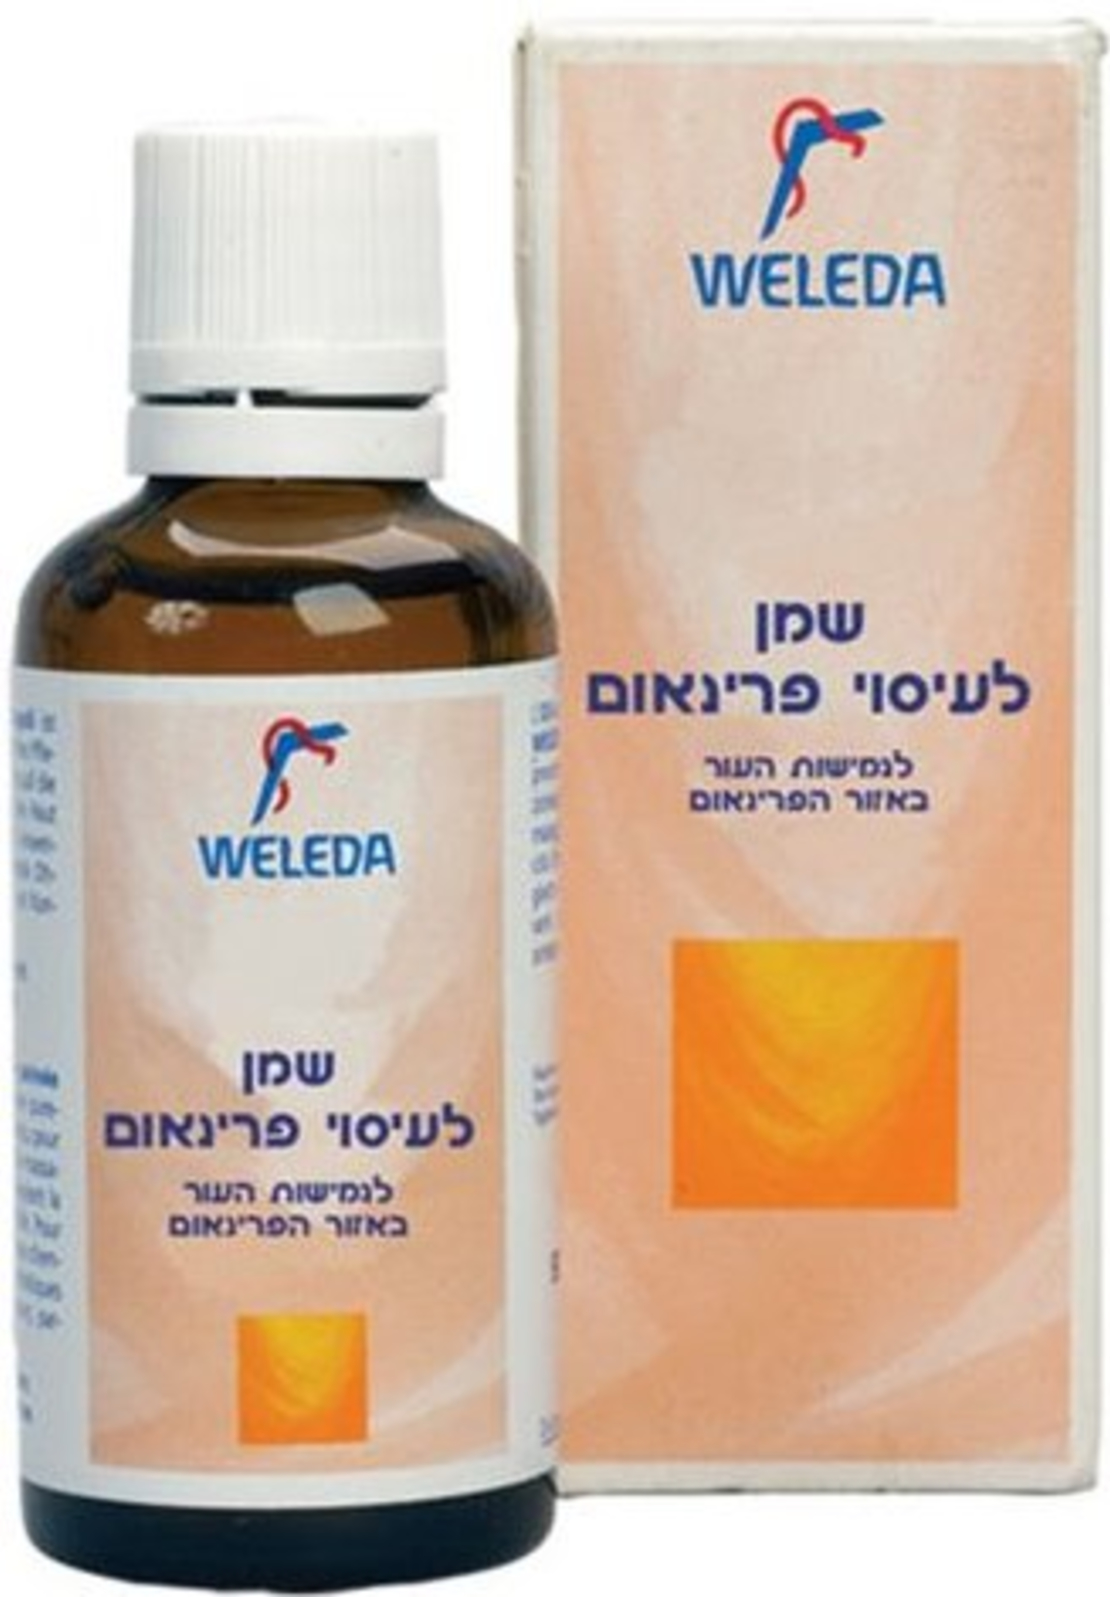 וולדה - שמן לעיסוי פרינאום Weleda Perineum Massage Oil